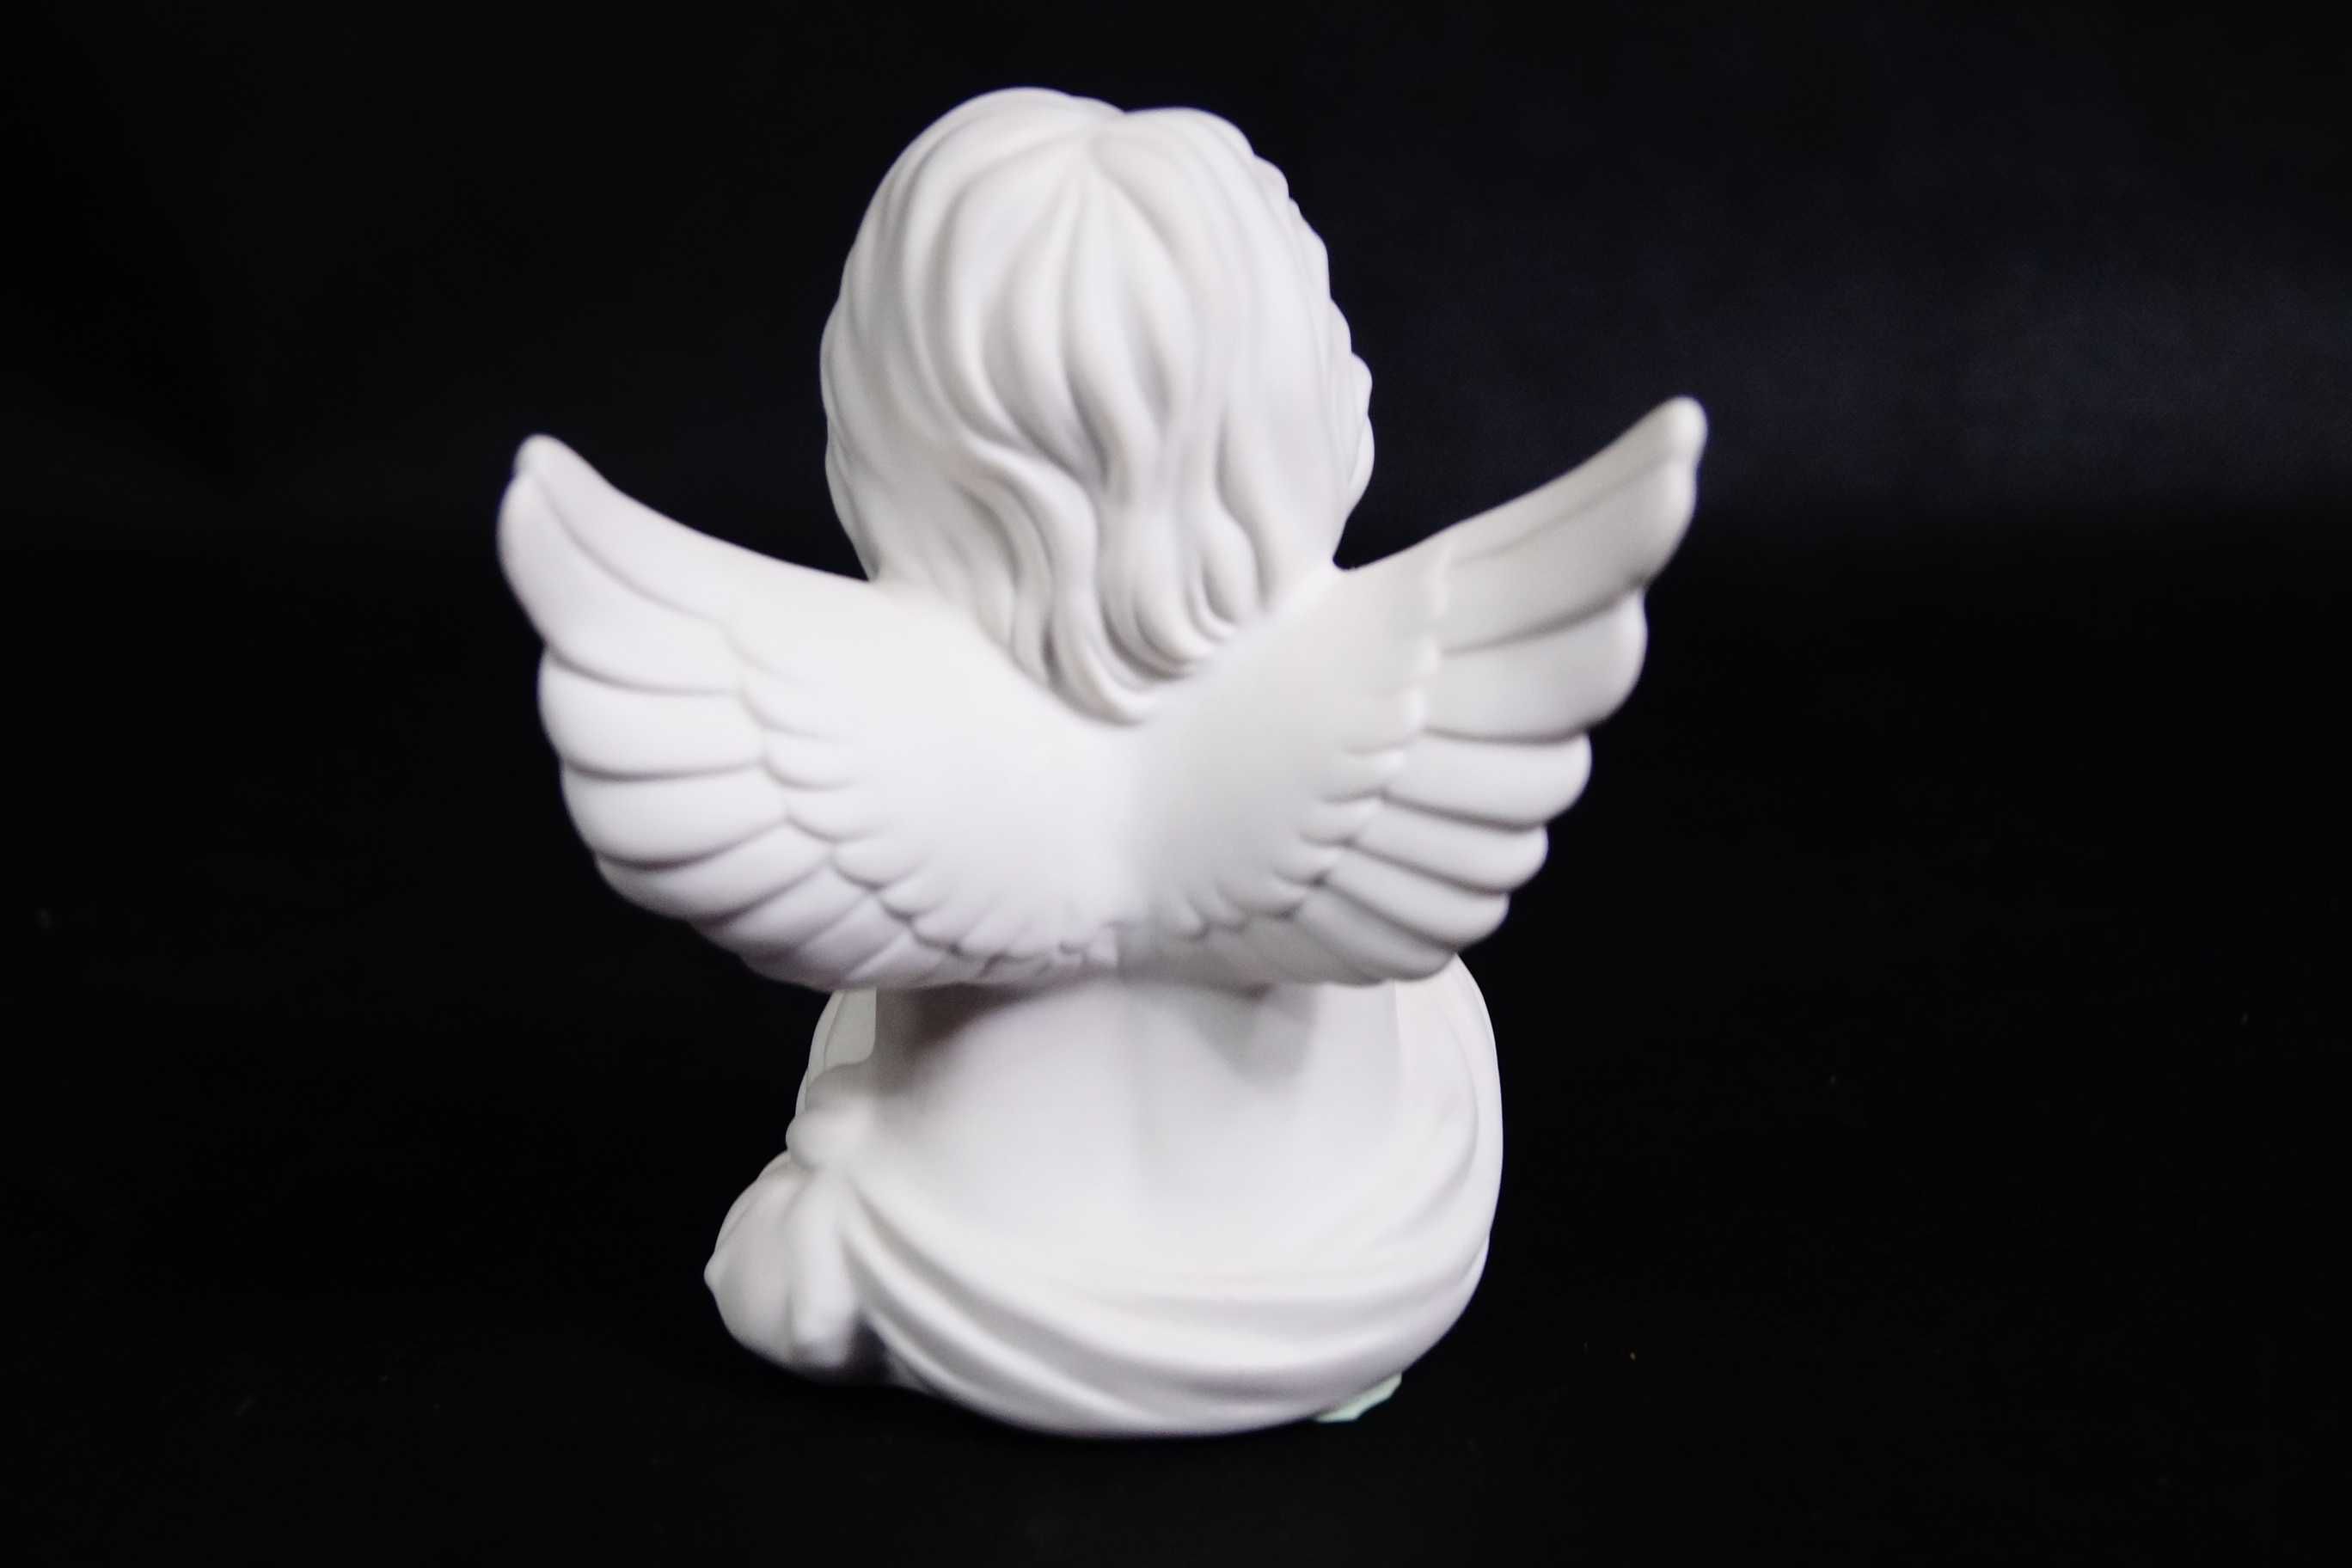 Aniołek figura porcelanowa Rosenthal biskwitowa 2